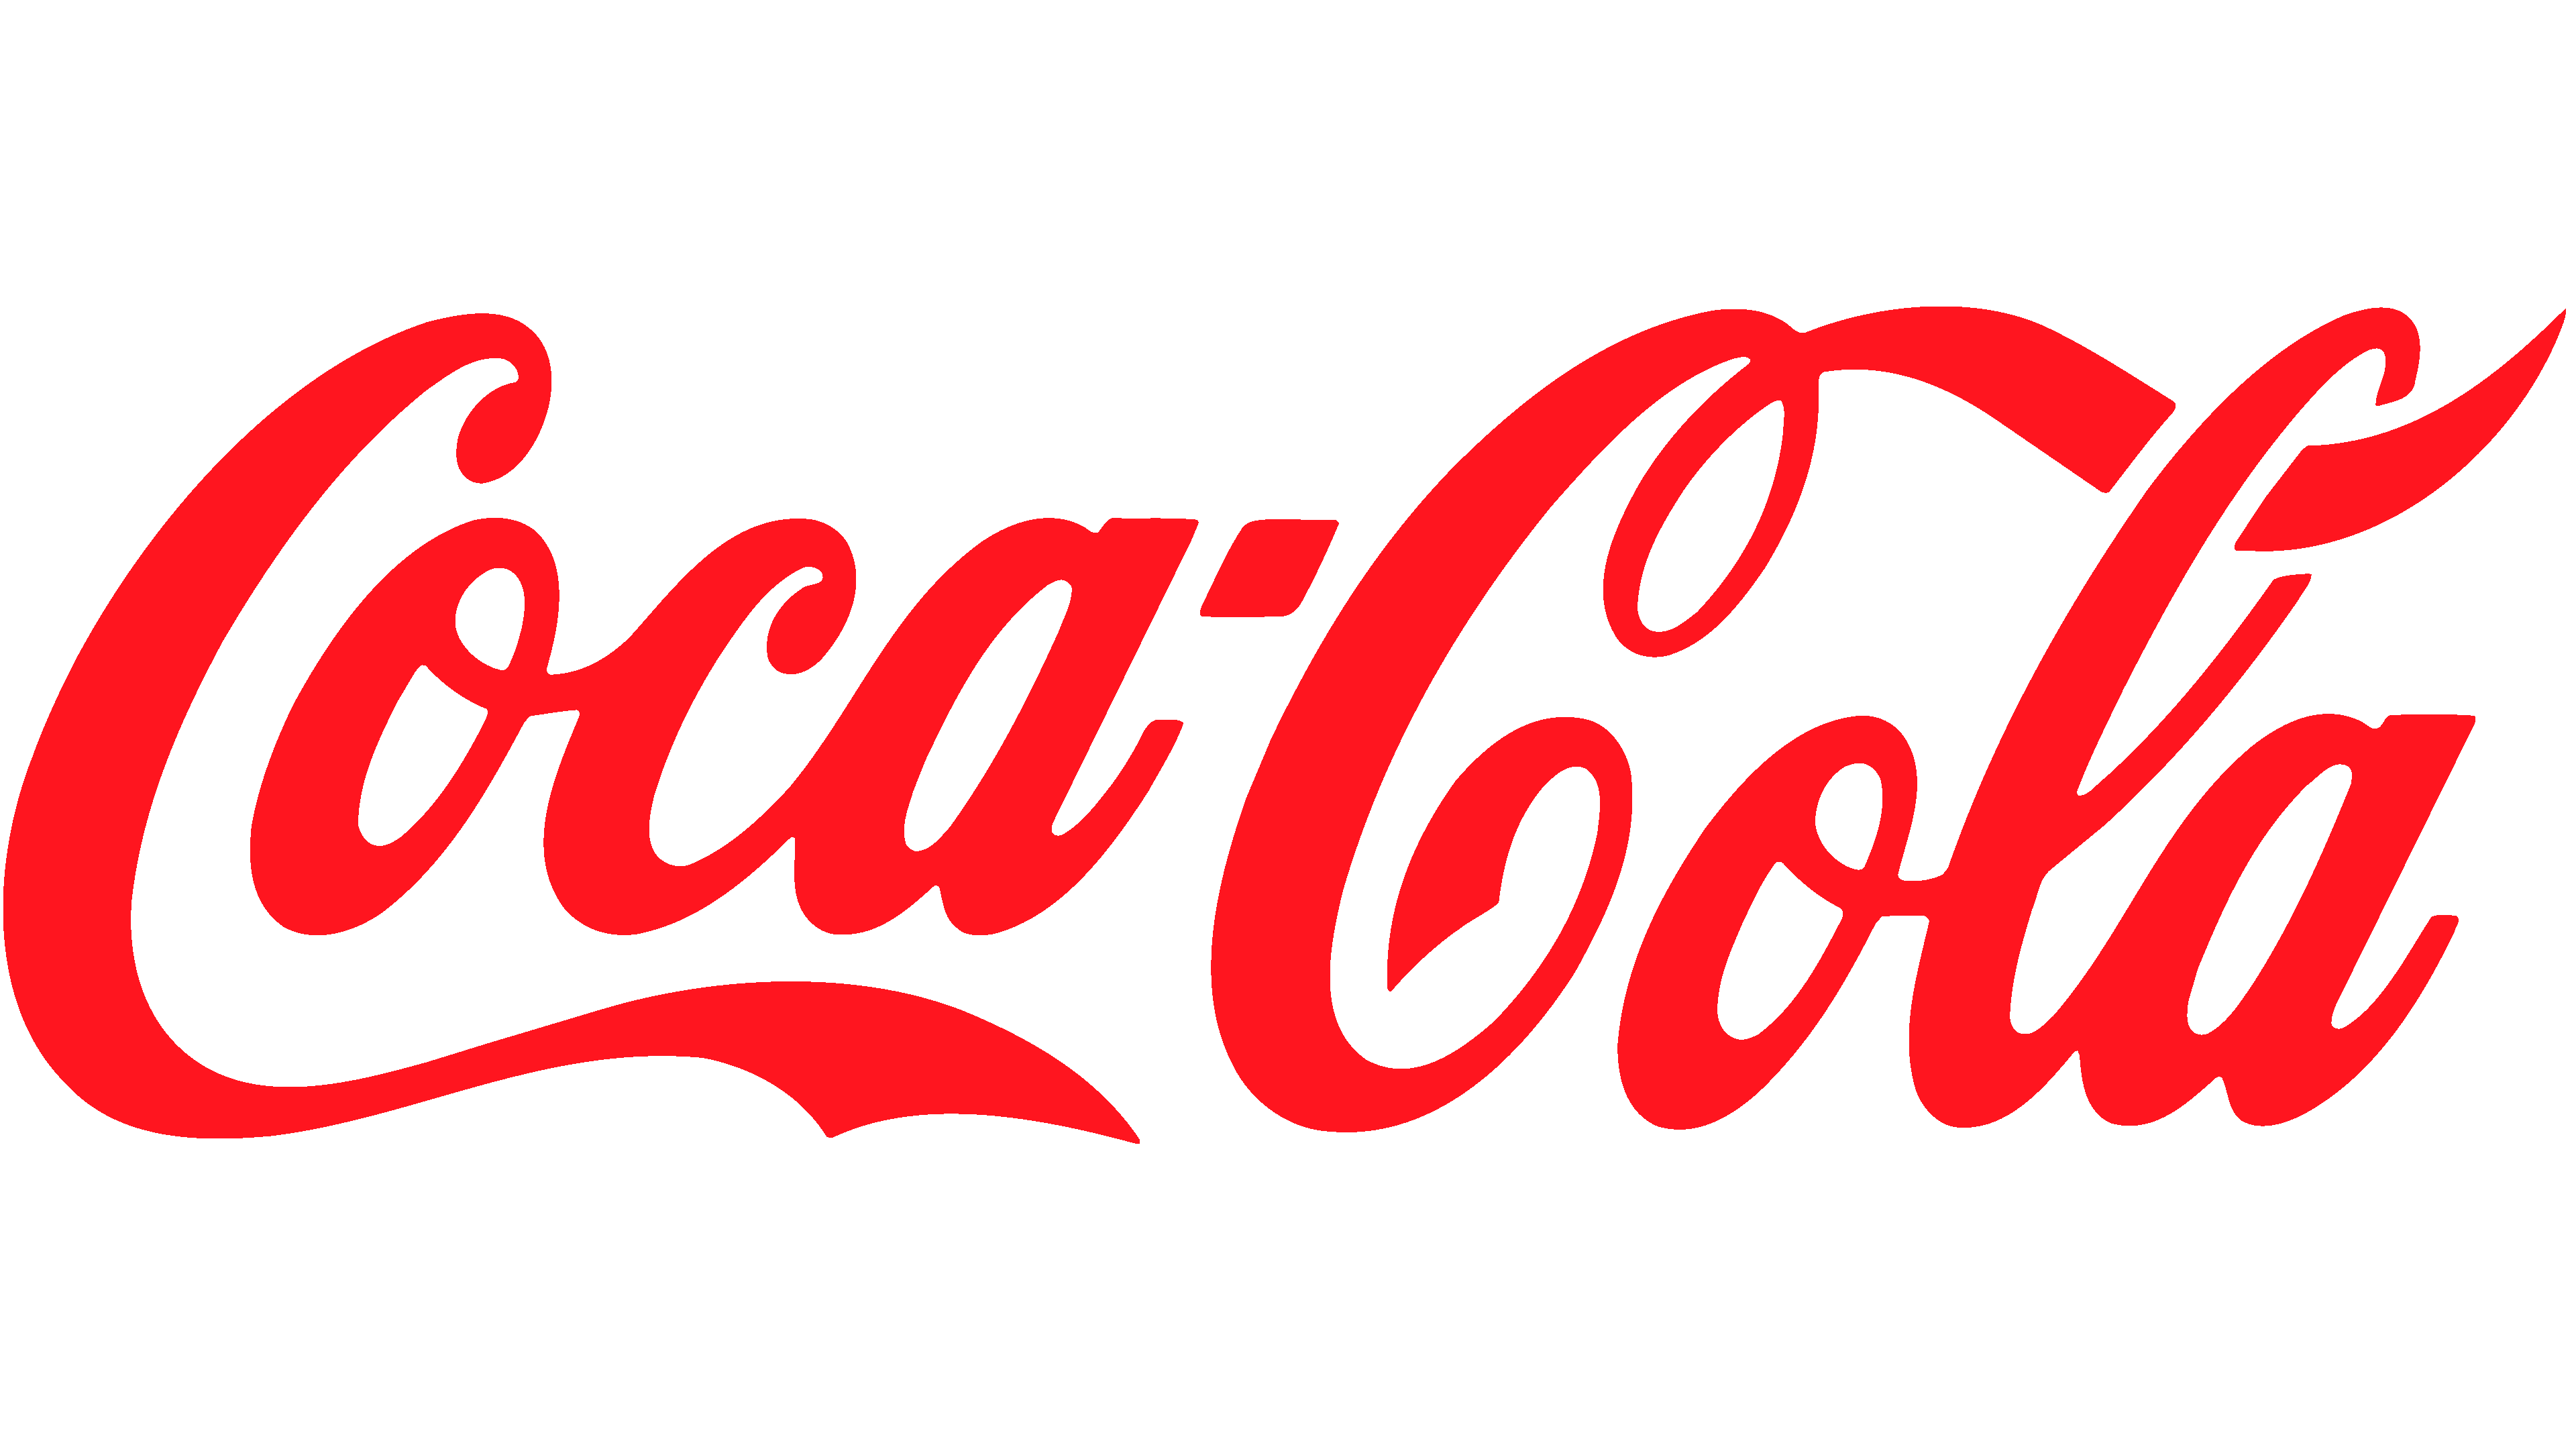 Coco Cola